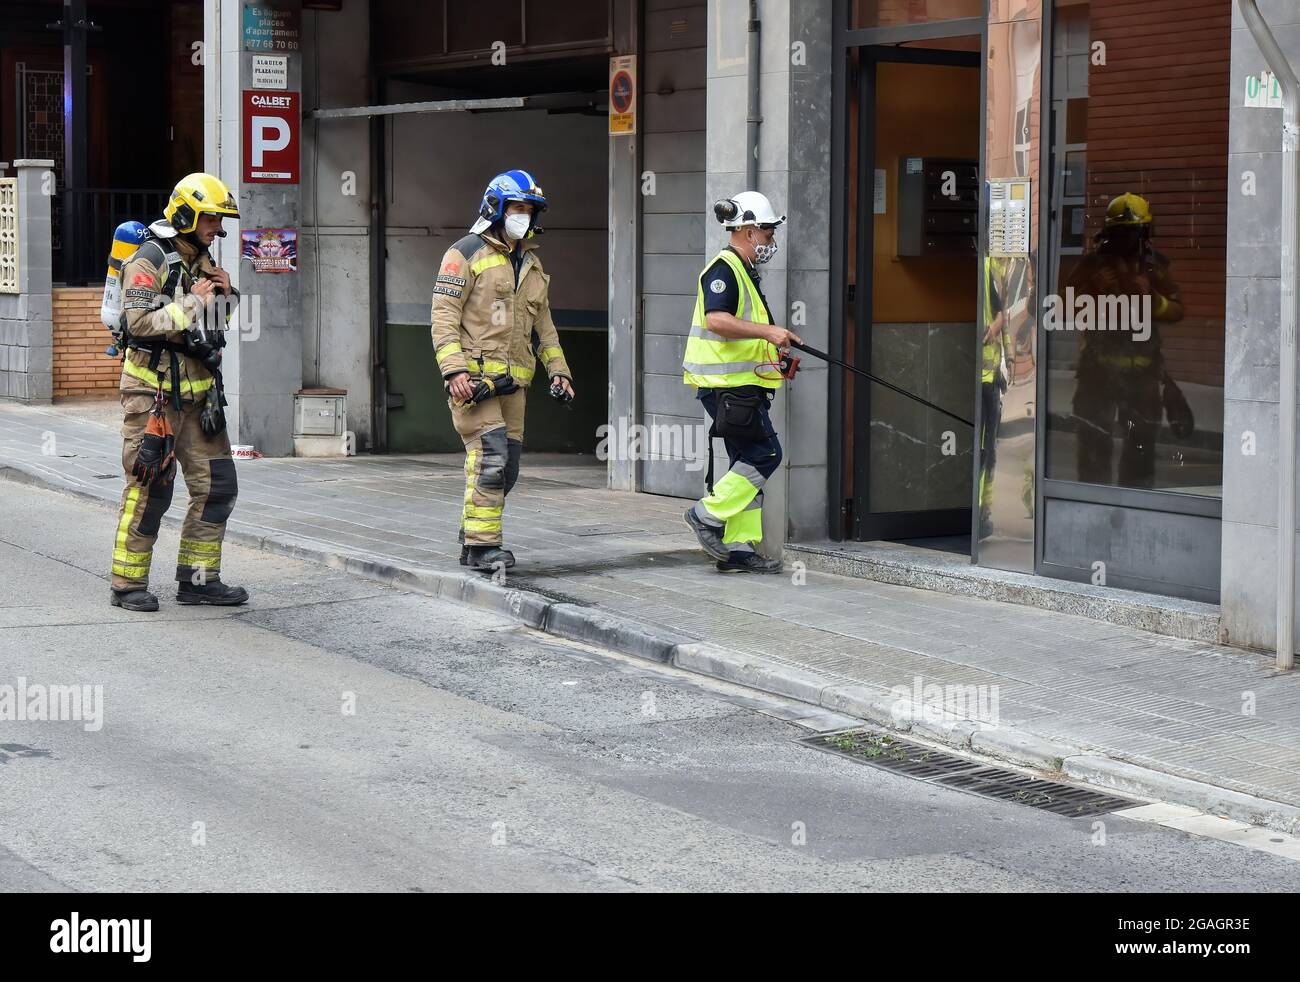 Il Sergente J Palau dei vigili del fuoco della Catalogna, insieme ad un pompiere e ad un tecnico della società di fornitura di gas, entra in un edificio per misurare i vapori in una perdita di gas a Vendrell. Un forte odore di gas ha allertato i residenti di San Jordi Street, Vendrell, dove tre squadre di pompieri della Catalogna e diversi pattugliamenti della polizia locale hanno partecipato all'accesso di chiusura alla zona interessata. I vigili del fuoco, con l'aiuto di tecnici dell'azienda del gas, hanno iniziato le misurazioni del gas in quanto l'odore veniva dalla rete fognaria sotterranea e dalla presenza di vapori o livelli di propano, butano o ga naturale Foto Stock